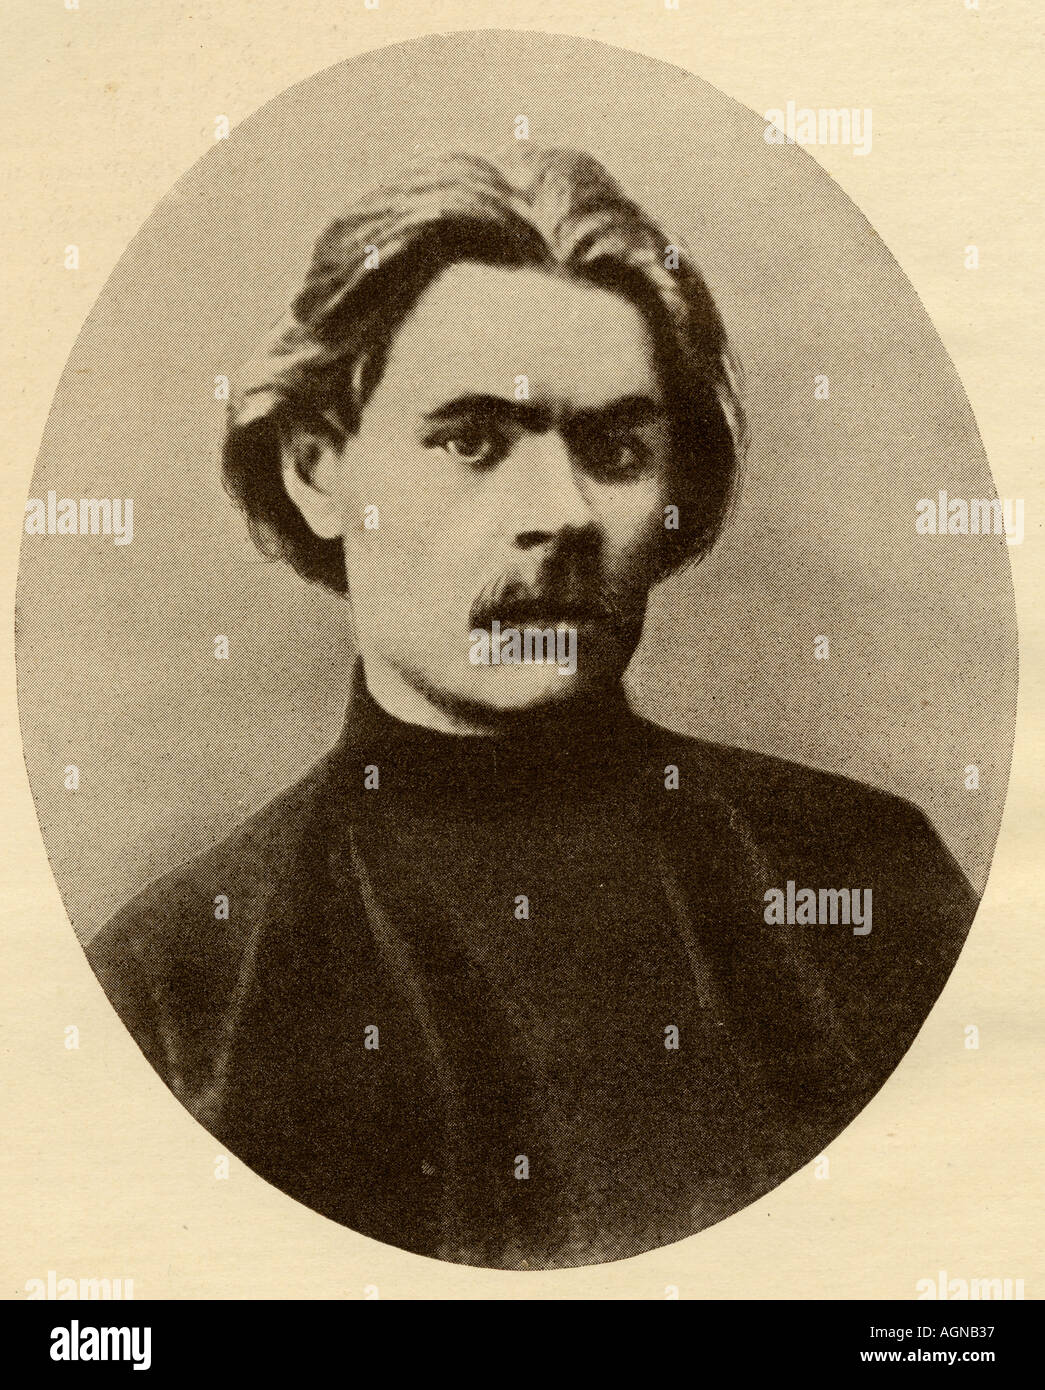 Alexei Maximovich Peshkov, aka Maxim Gorky, 1868 -1936. Soviet novelist, playwright and social activist. Stock Photo